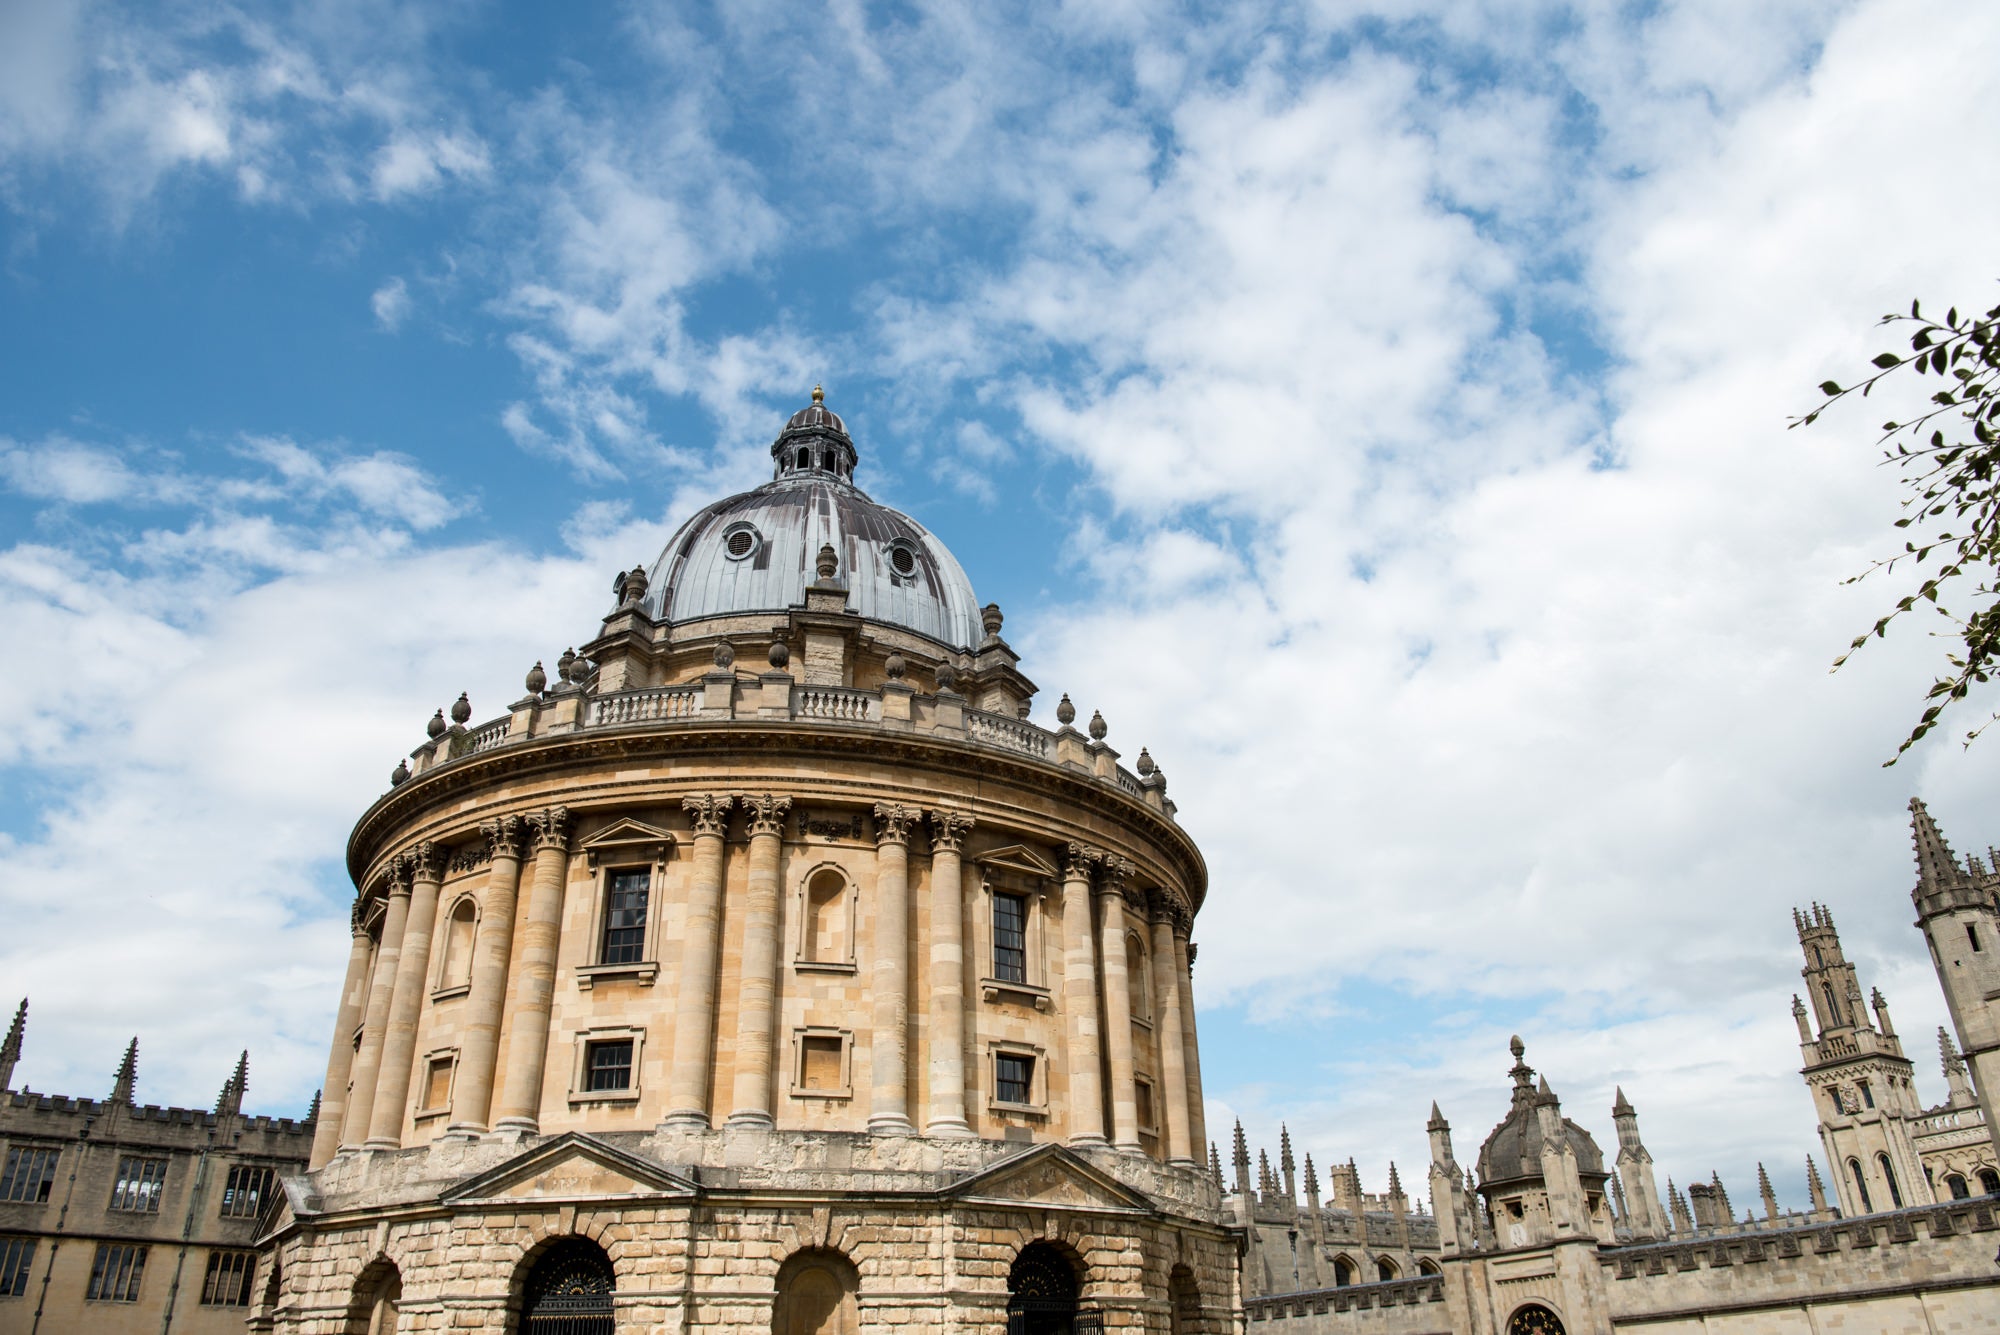 The Oxford University skyline